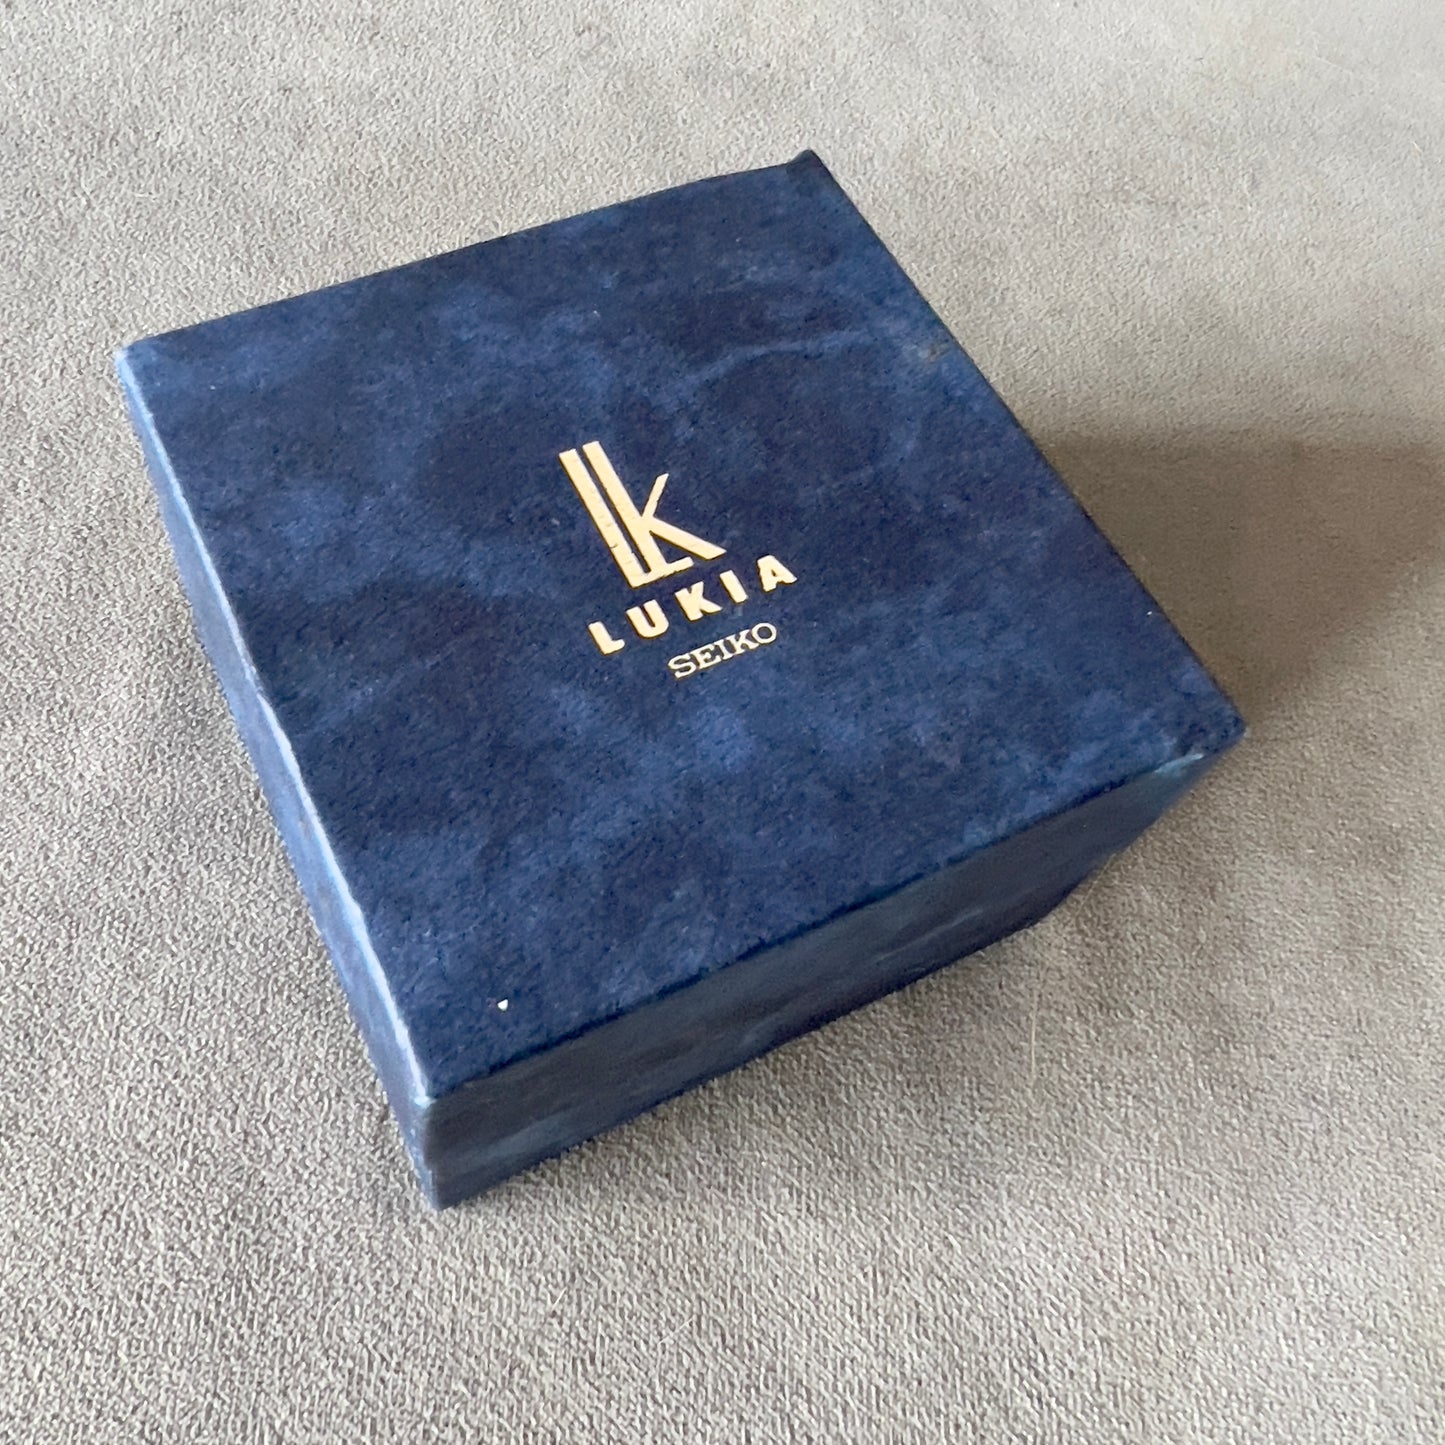 LUKIA SEIKO Box + Booklet 4x3x3 inches